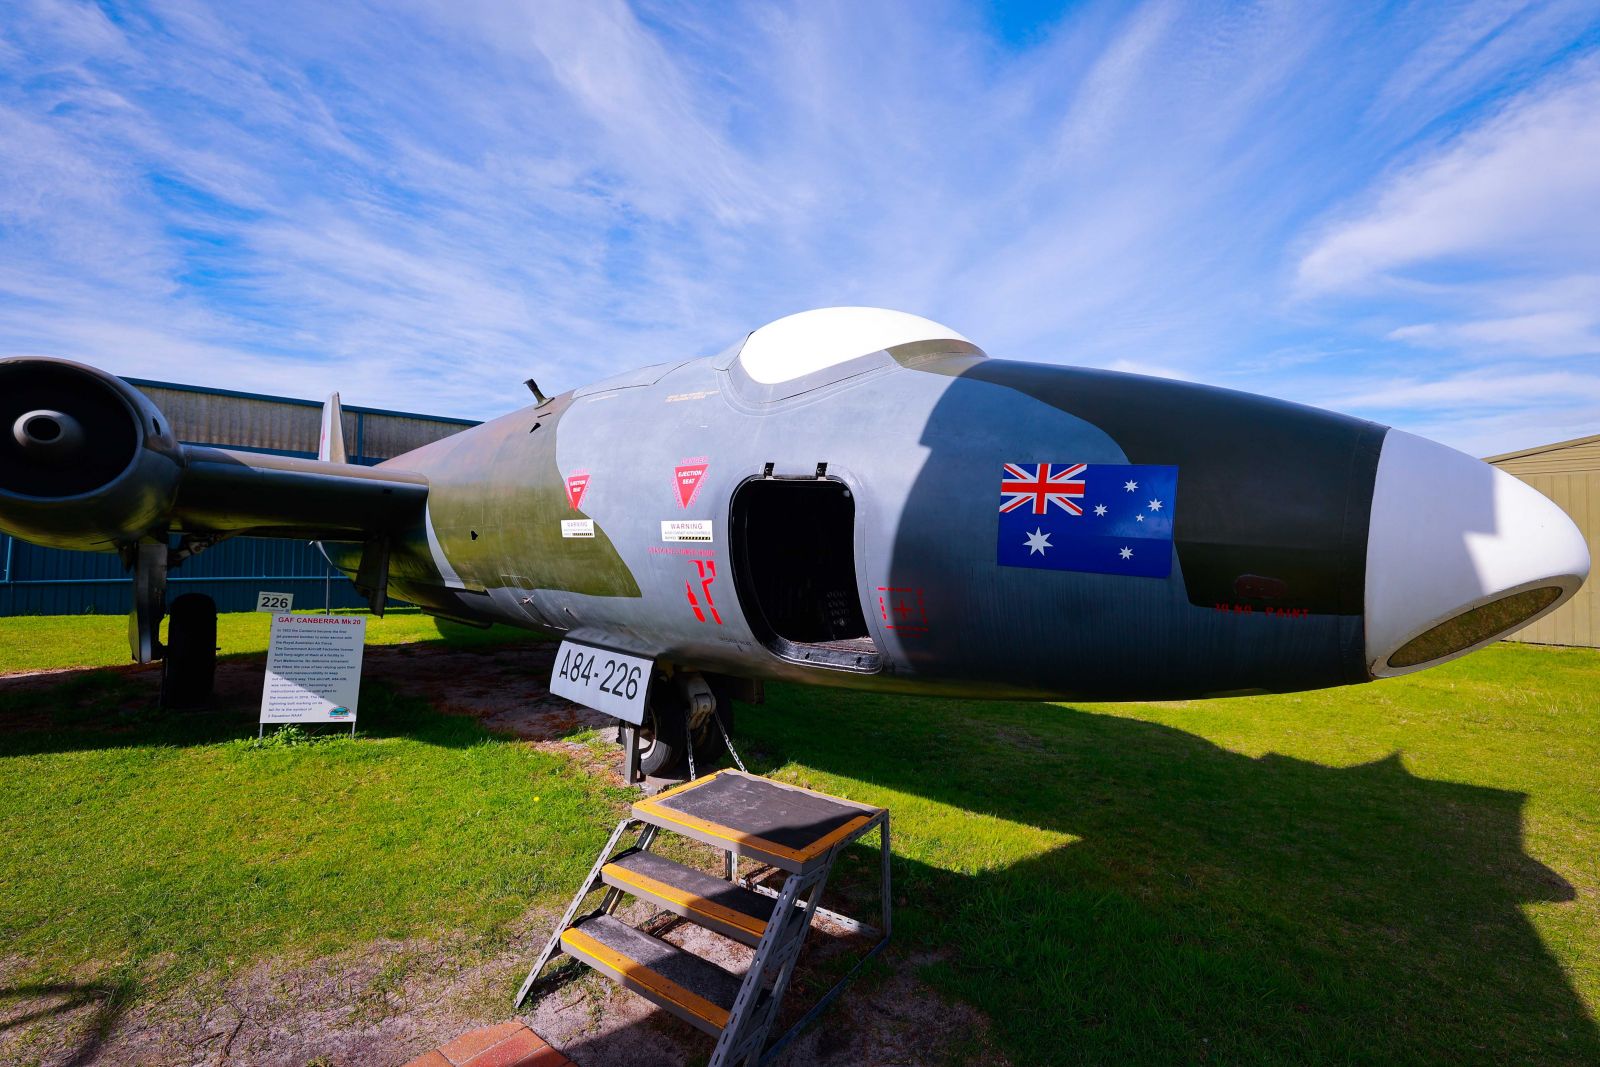 Máy bay ném bom hạng nặng G.A.F Canberra MK 20 sản xuất năm 1953 lần đầu tiên sử dụng trong lực lượng không quân Hoàng gia Úc cho đến năm 1971, trước khi được đưa về Bảo tàng năm 2016.